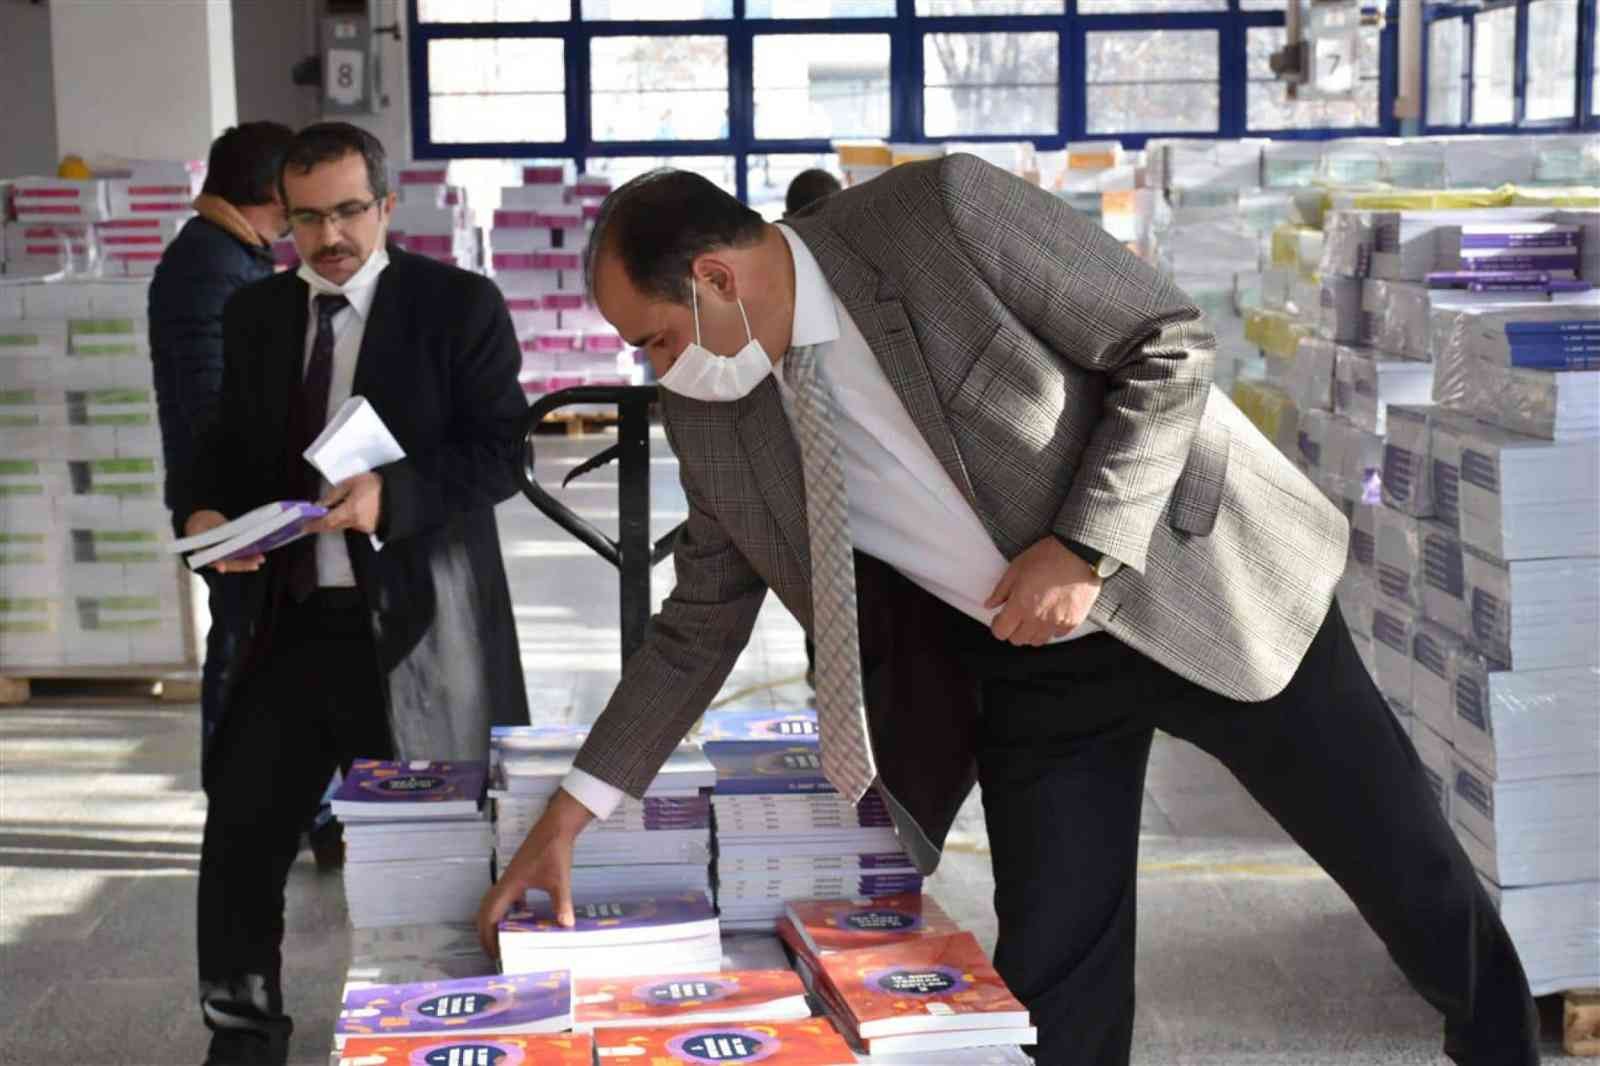 Erzincan’da yardımcı kaynak kitapların dağıtımına başlandı #erzincan